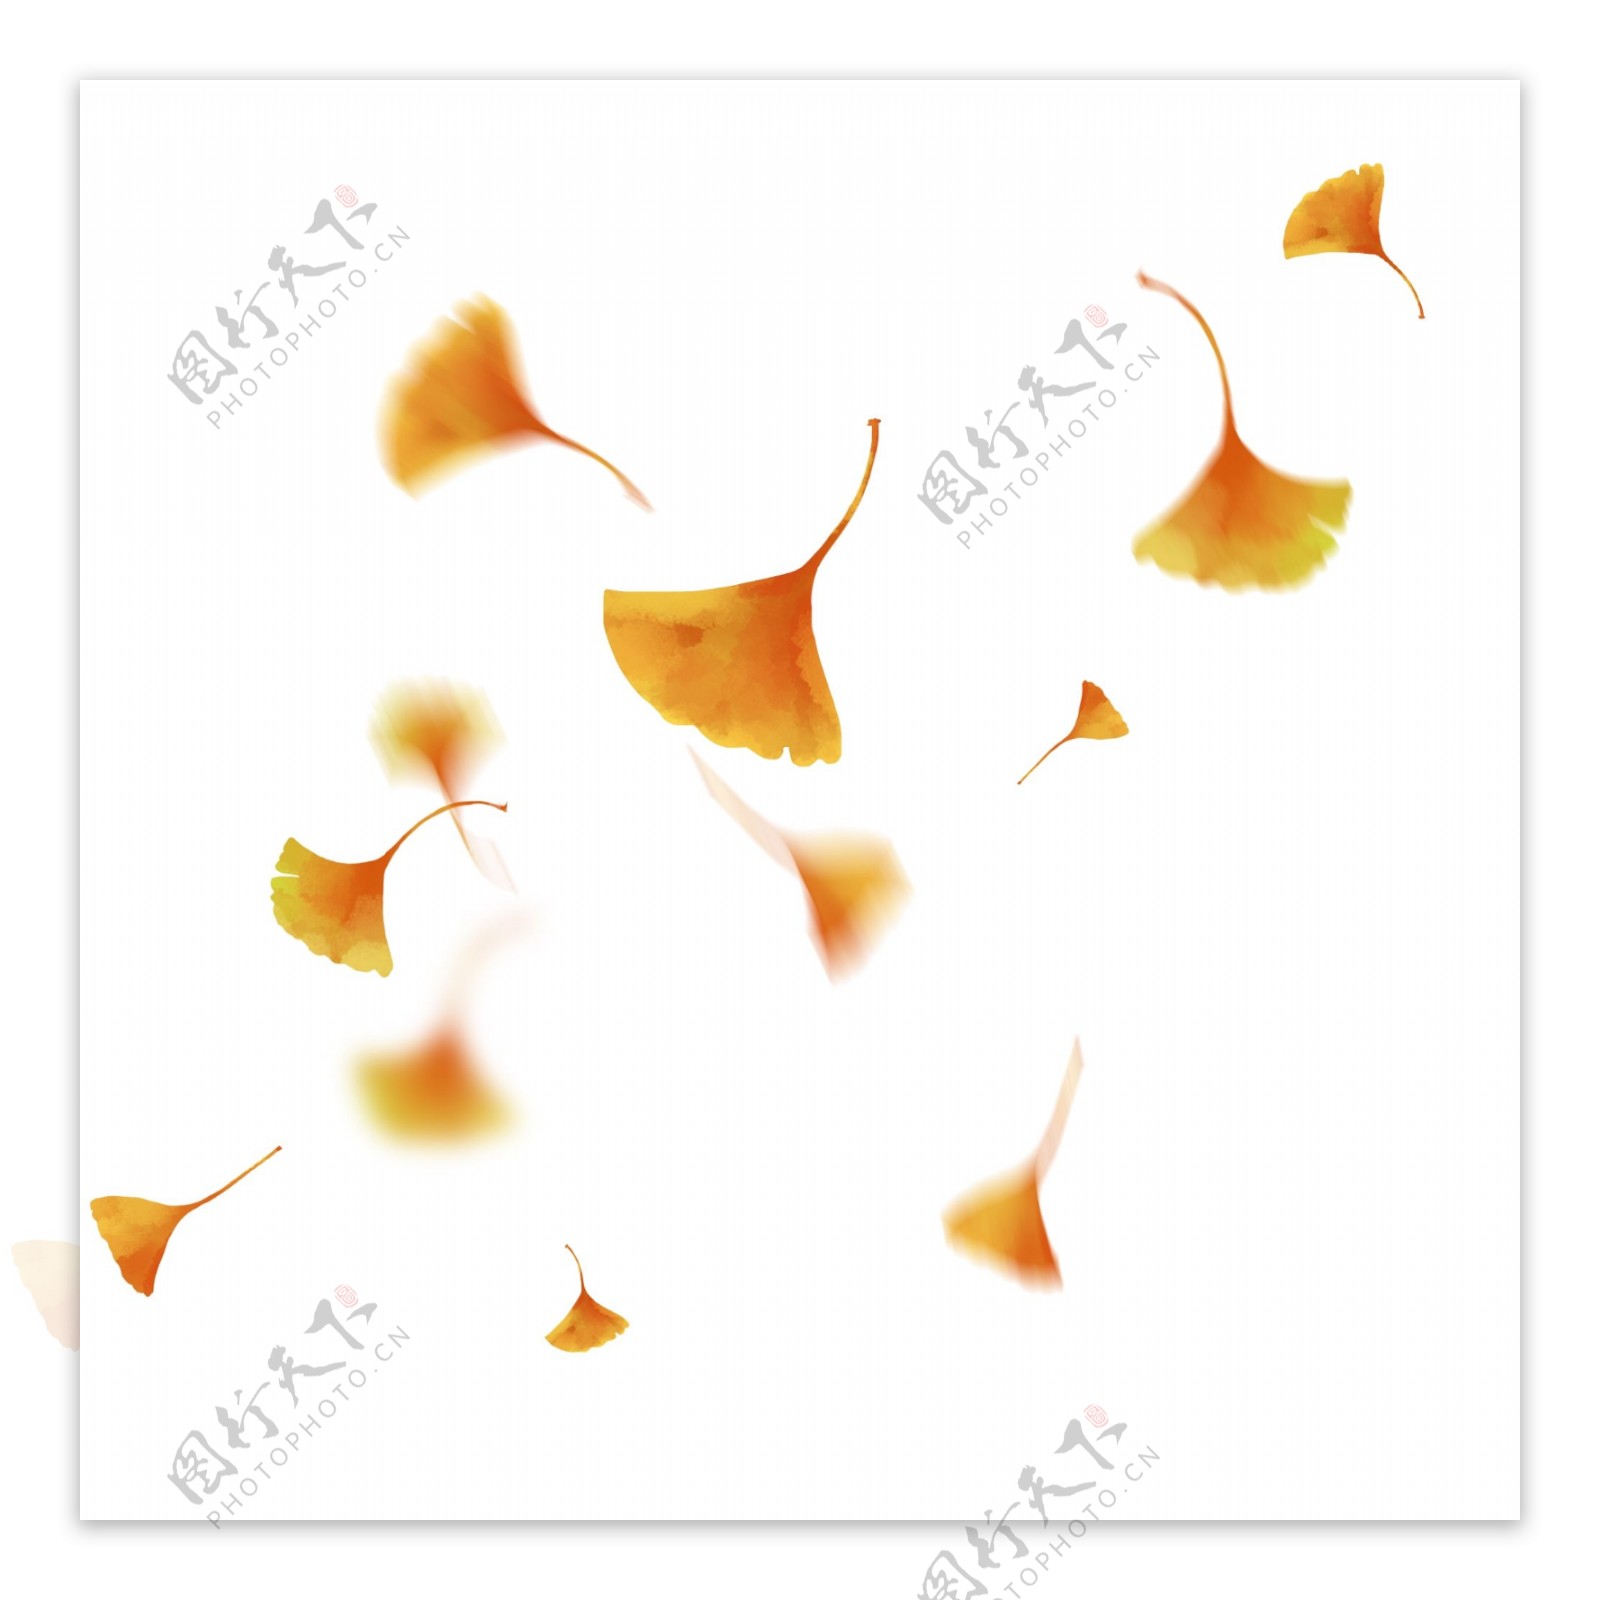 漂浮的银杏叶漂浮的树叶手绘银杏叶